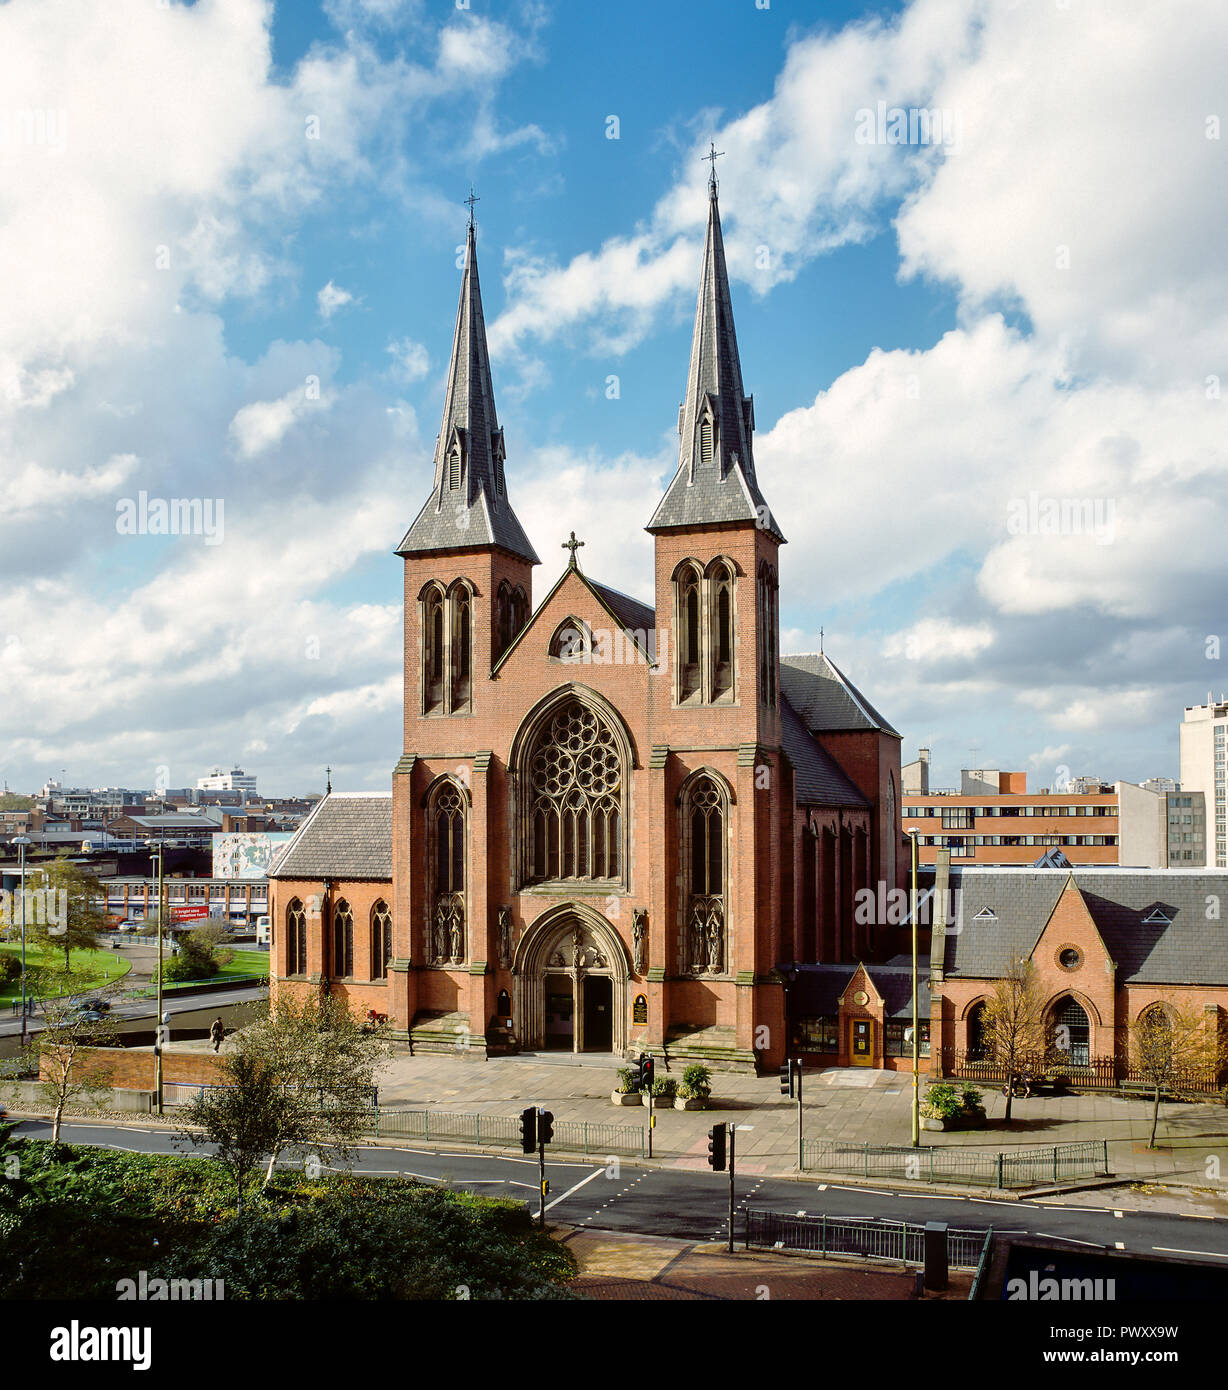 St Chad's Kathedrale, Birmingham, Großbritannien. Gebaut im Jahre 1841 von A.W. Pugin, es war der erste Römisch-katholische Kathedrale in England seit der Reformation Stockfoto